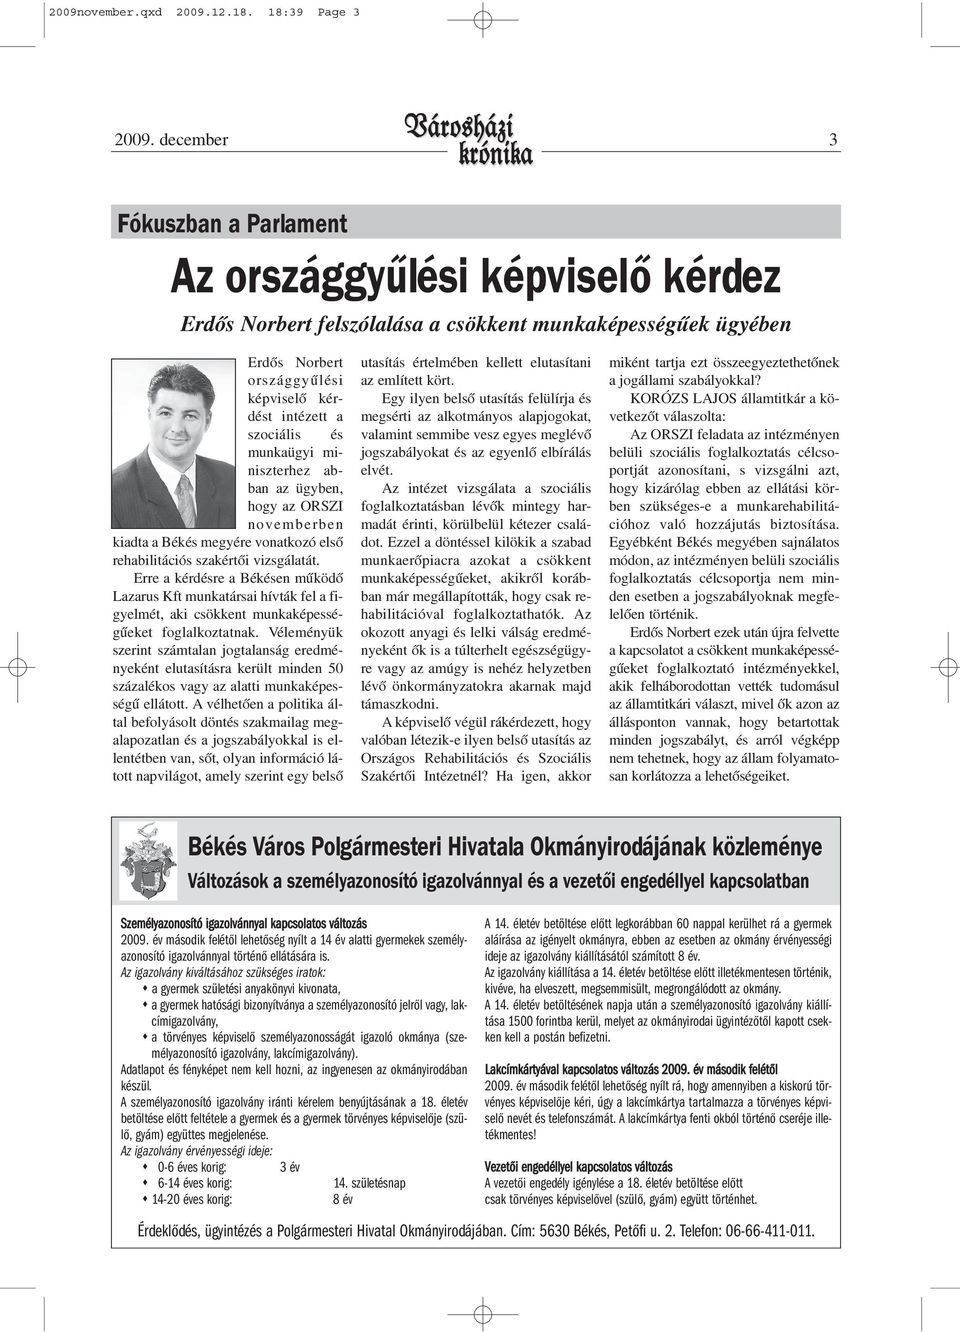 munkaügyi miniszterhez abban az ügyben, hogy az ORSZI novemberben kiadta a Békés megyére vonatkozó elsõ rehabilitációs szakértõi vizsgálatát.